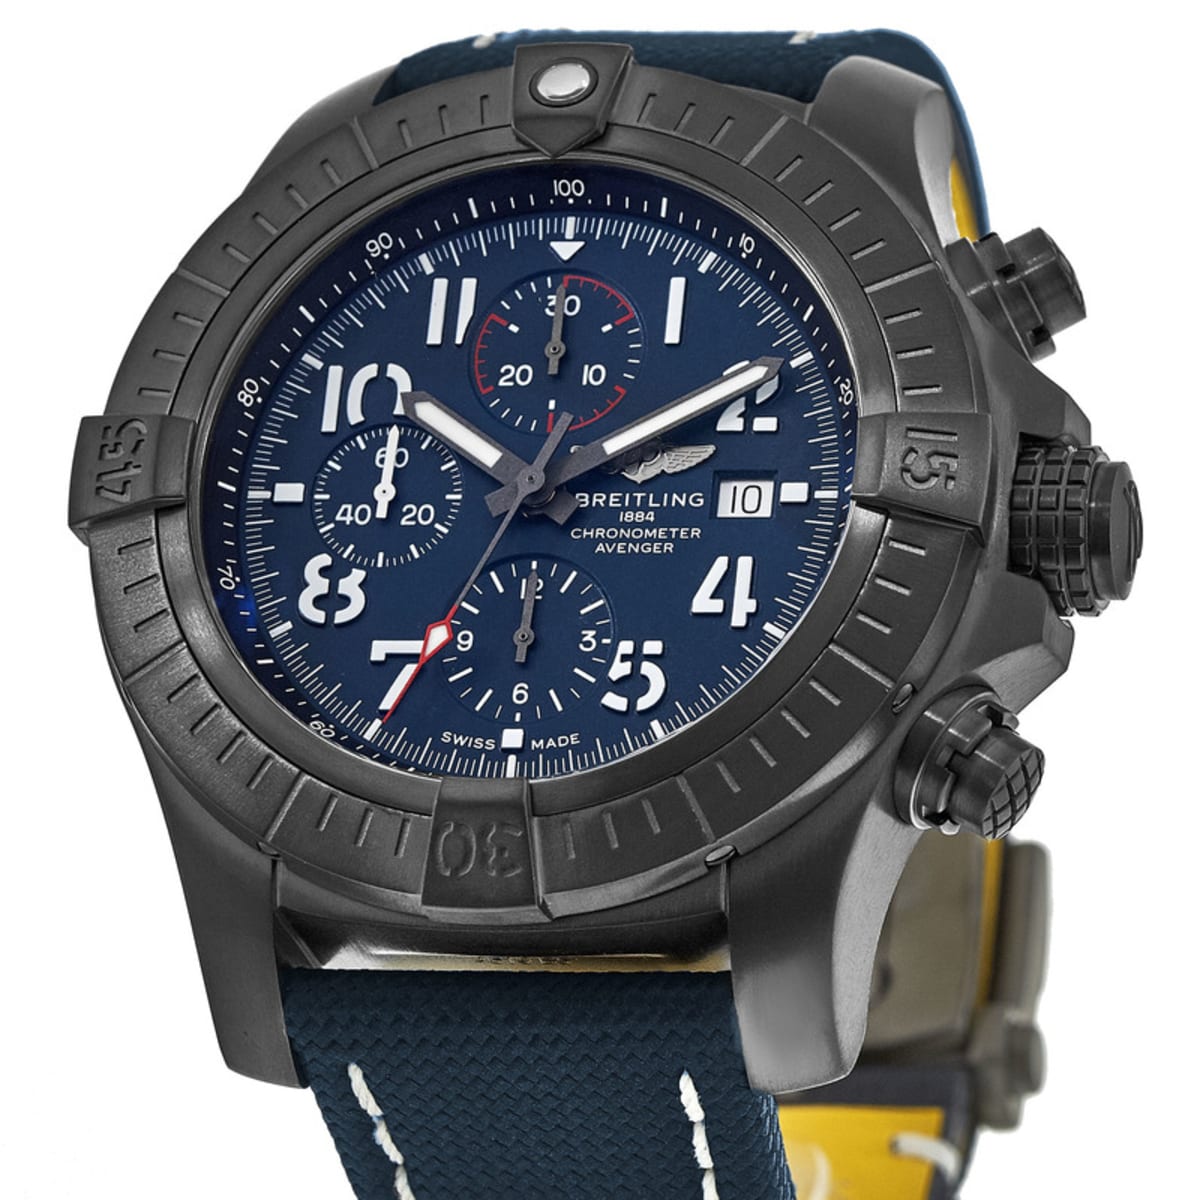 The titanium fake watch has blue dial.